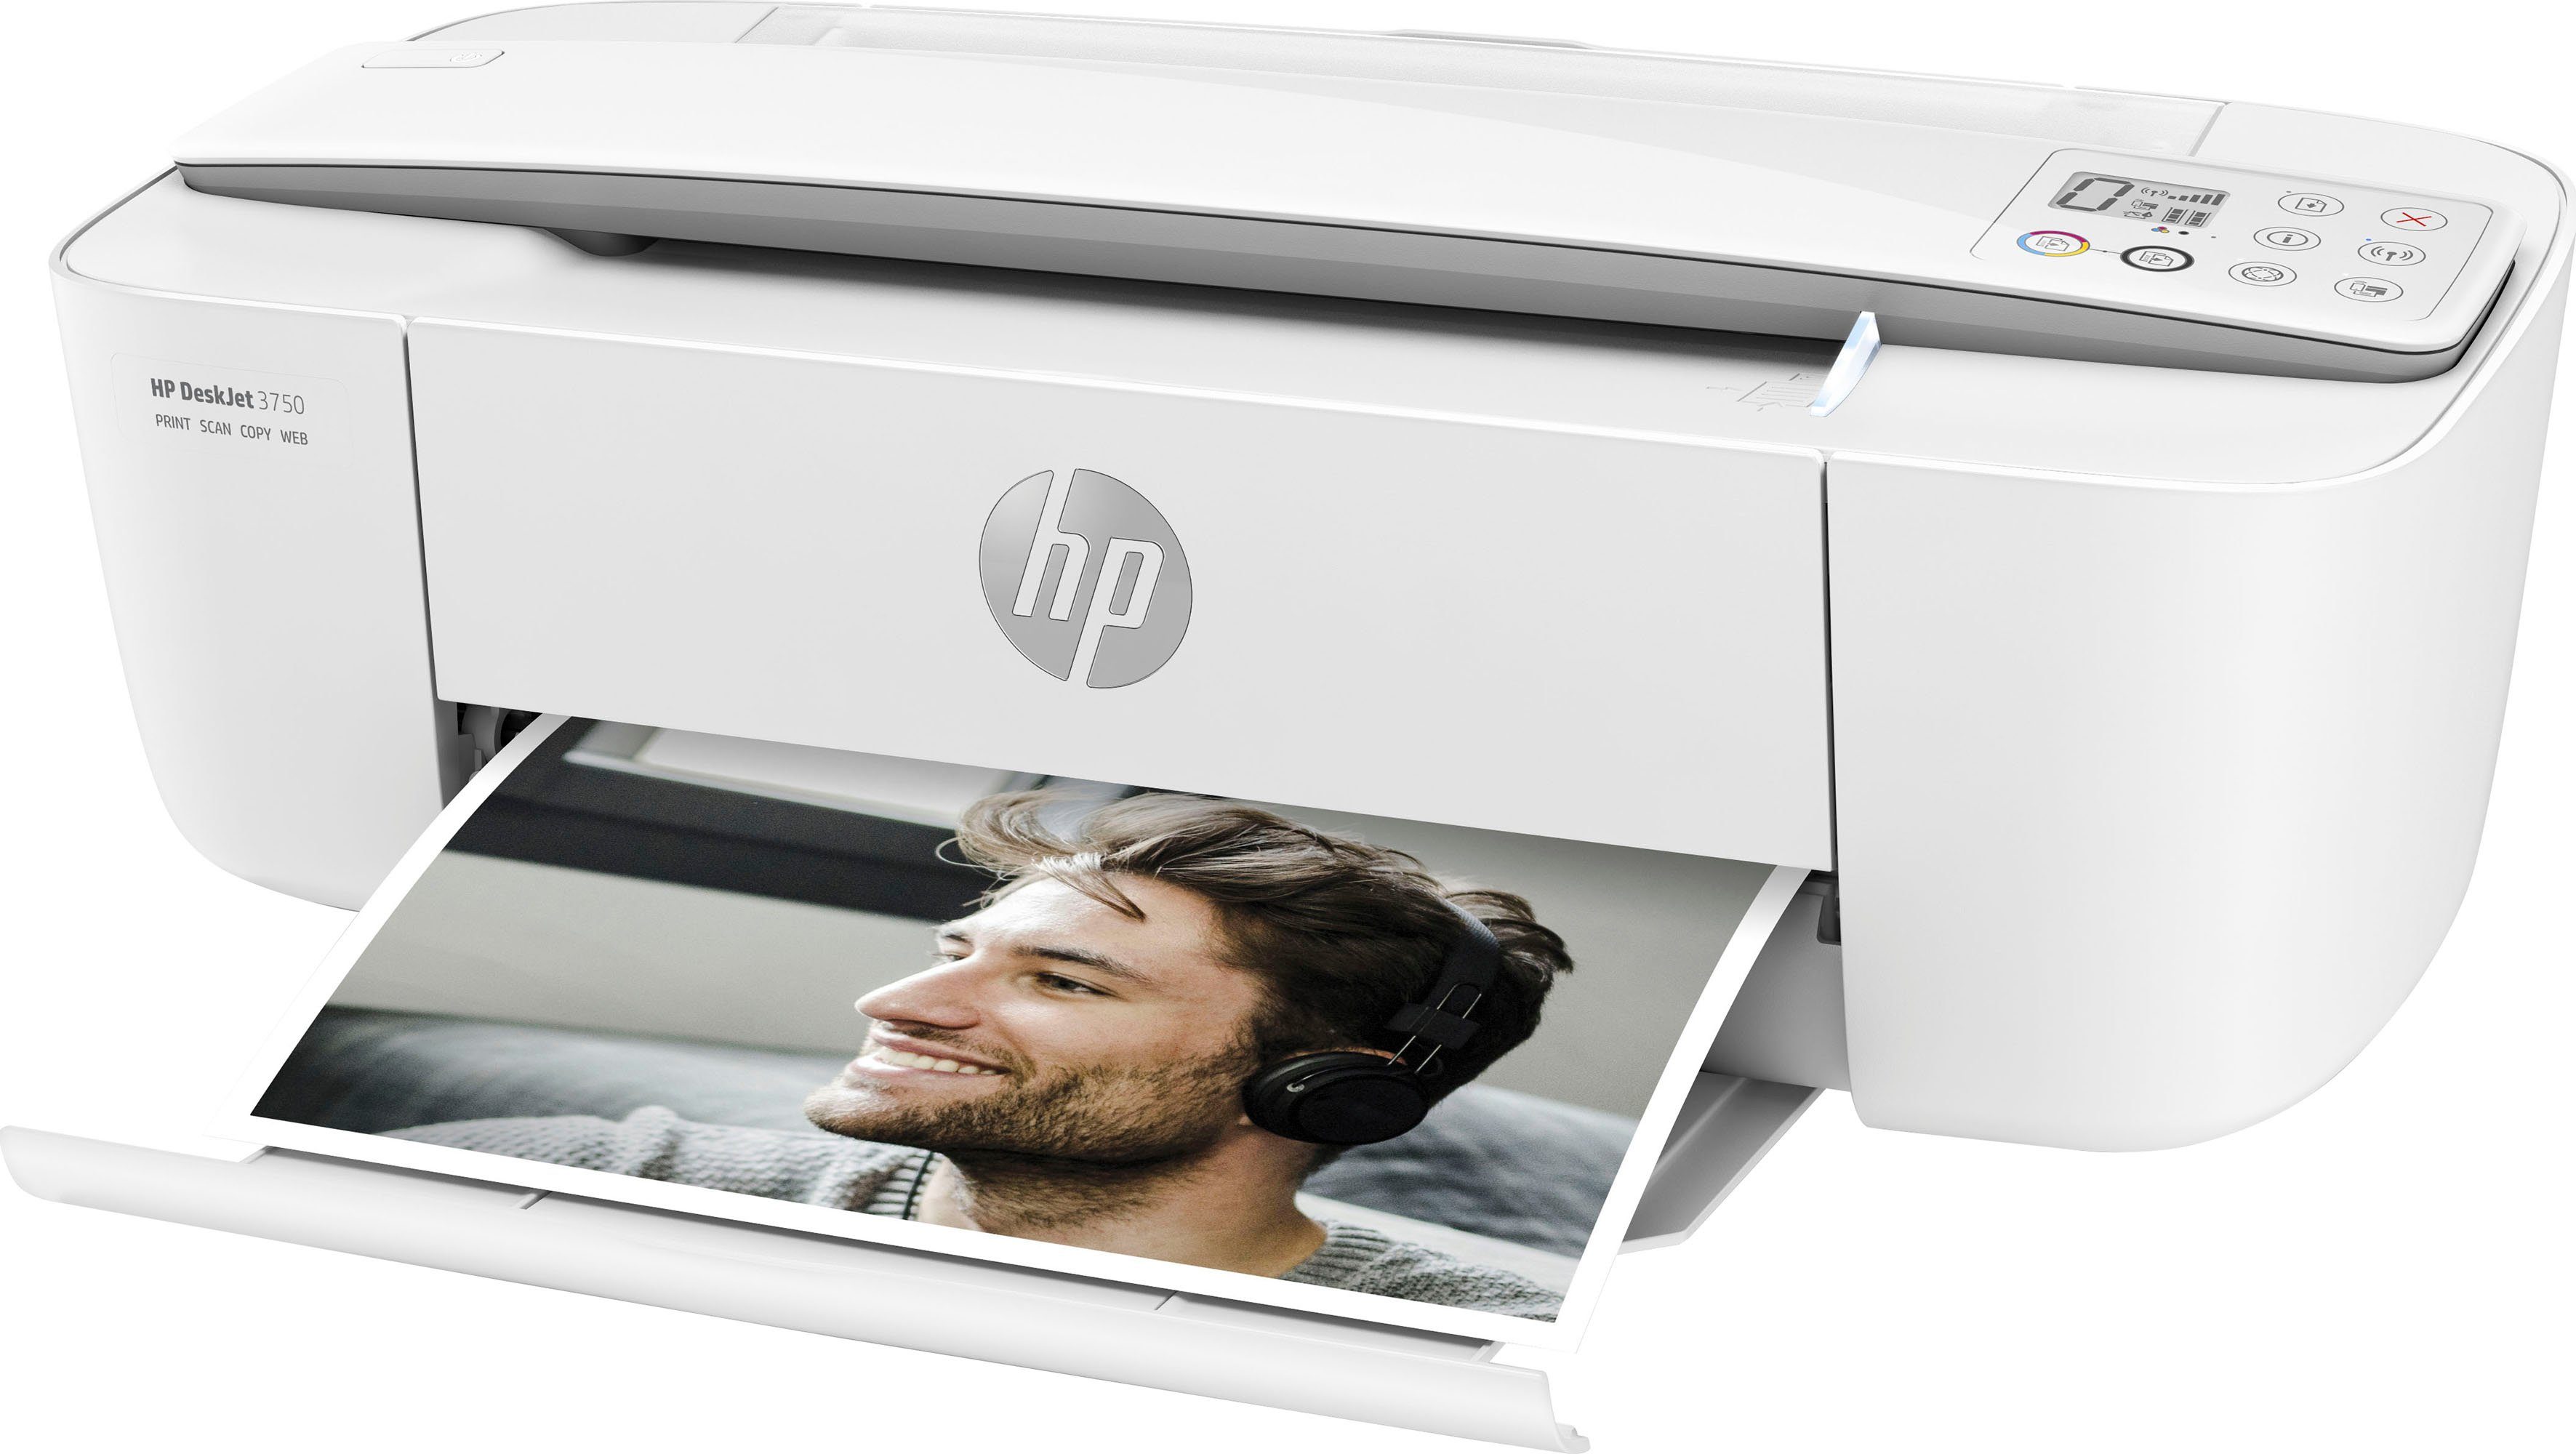 HP+ (WLAN Multifunktionsdrucker, (Wi-Fi), HP 3750 kompatibel) Instant DeskJet Ink Drucker